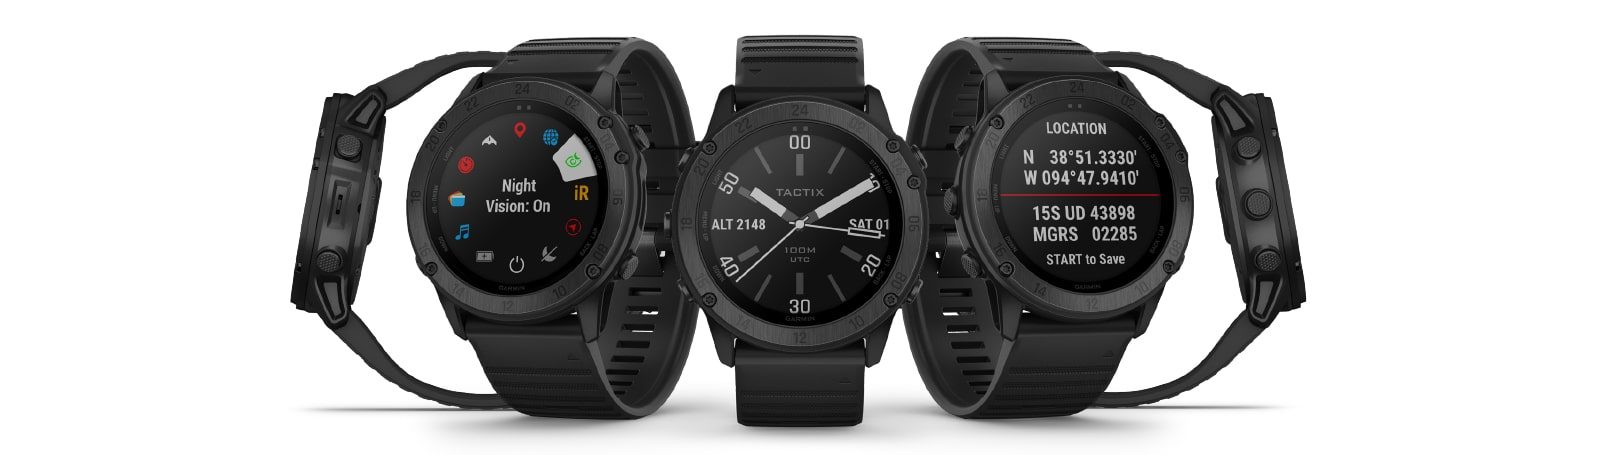 Die neueste Tactix Smartwatch von Garmin verfügt über einen Stealth-Modus, taktische Funktionen und mehr 20